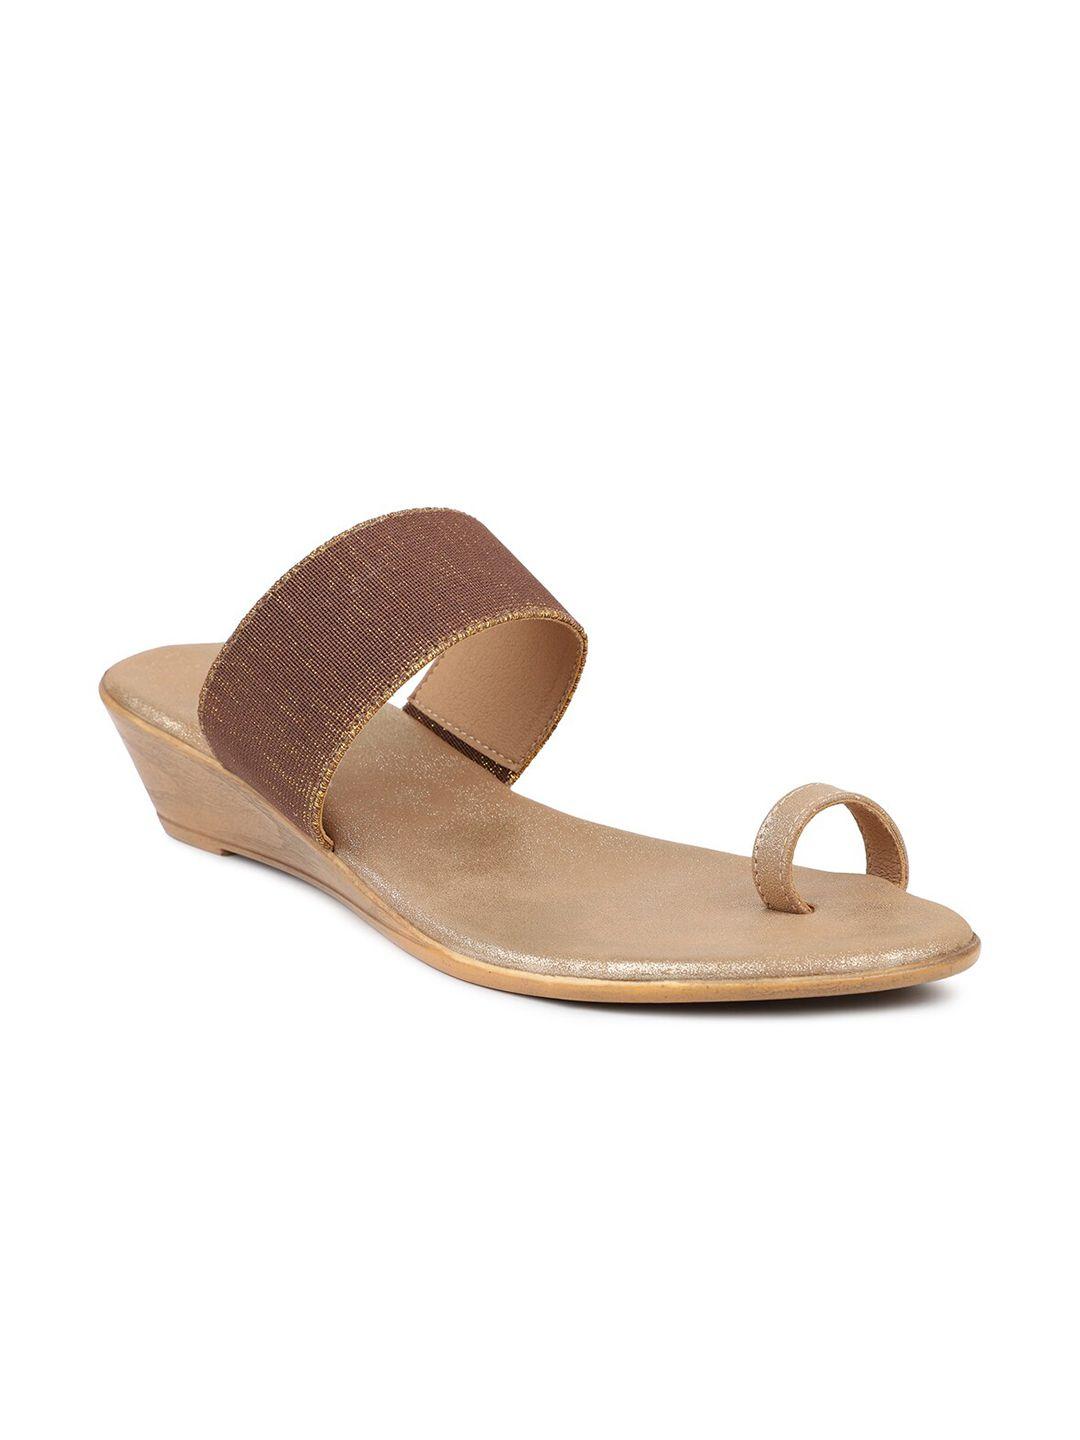 inc 5 gold-toned ethnic wedge heels